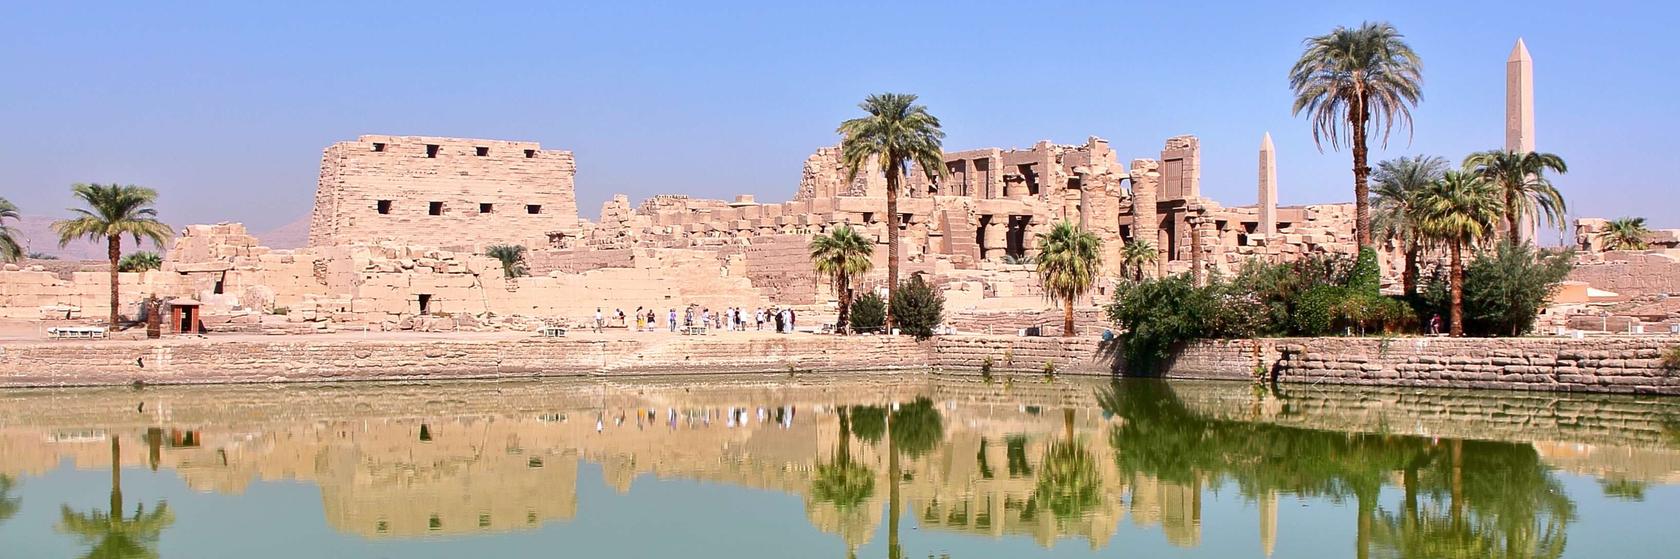 O lokalitě od Luxoru přes Lybijskou poušť až po Asuán